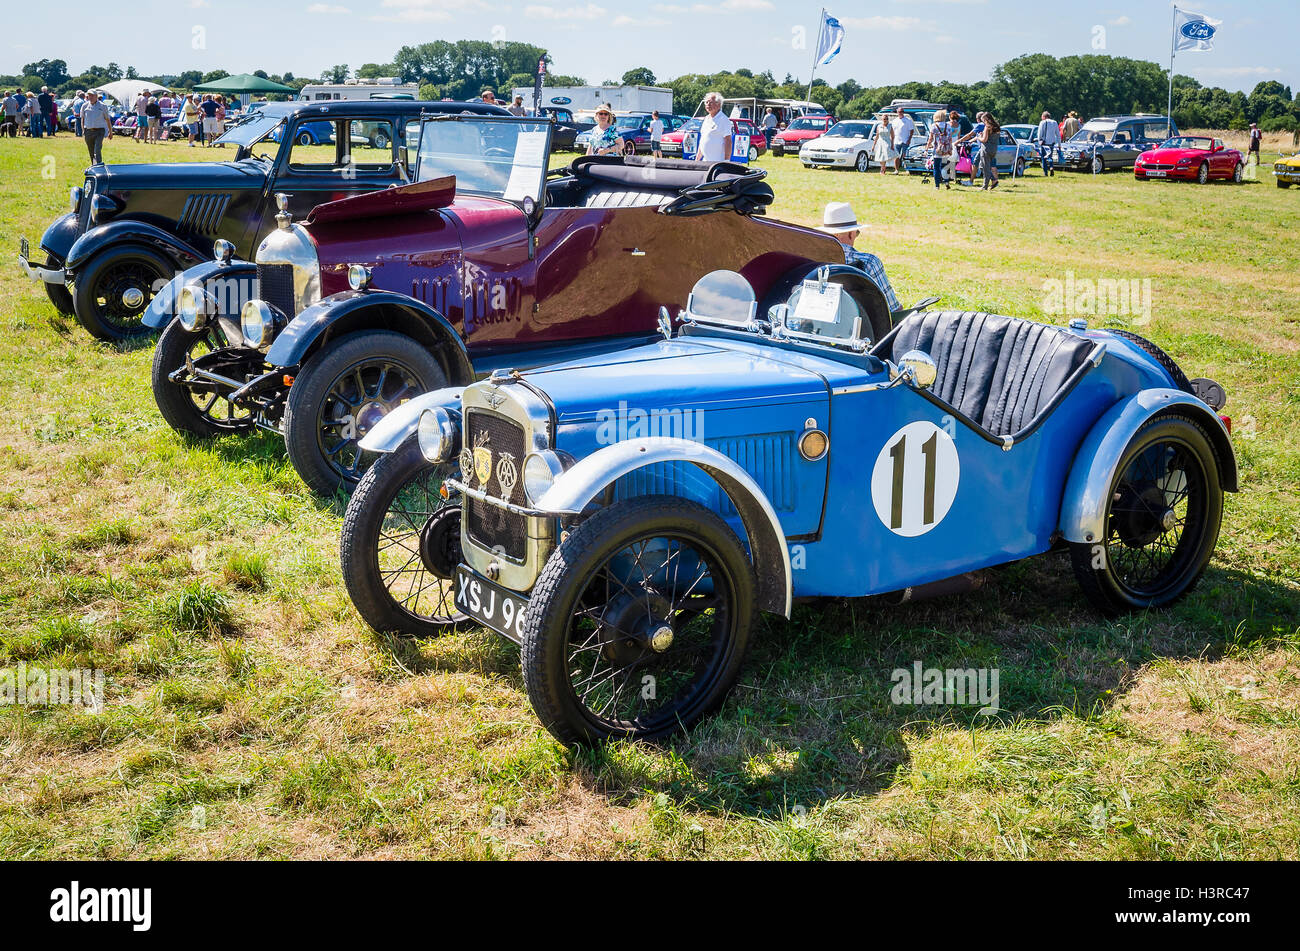 Eine Reihe von alten Autos in einem Land zu zeigen, einschließlich einem Austin 7 aus den 1930er Jahren Stockfoto